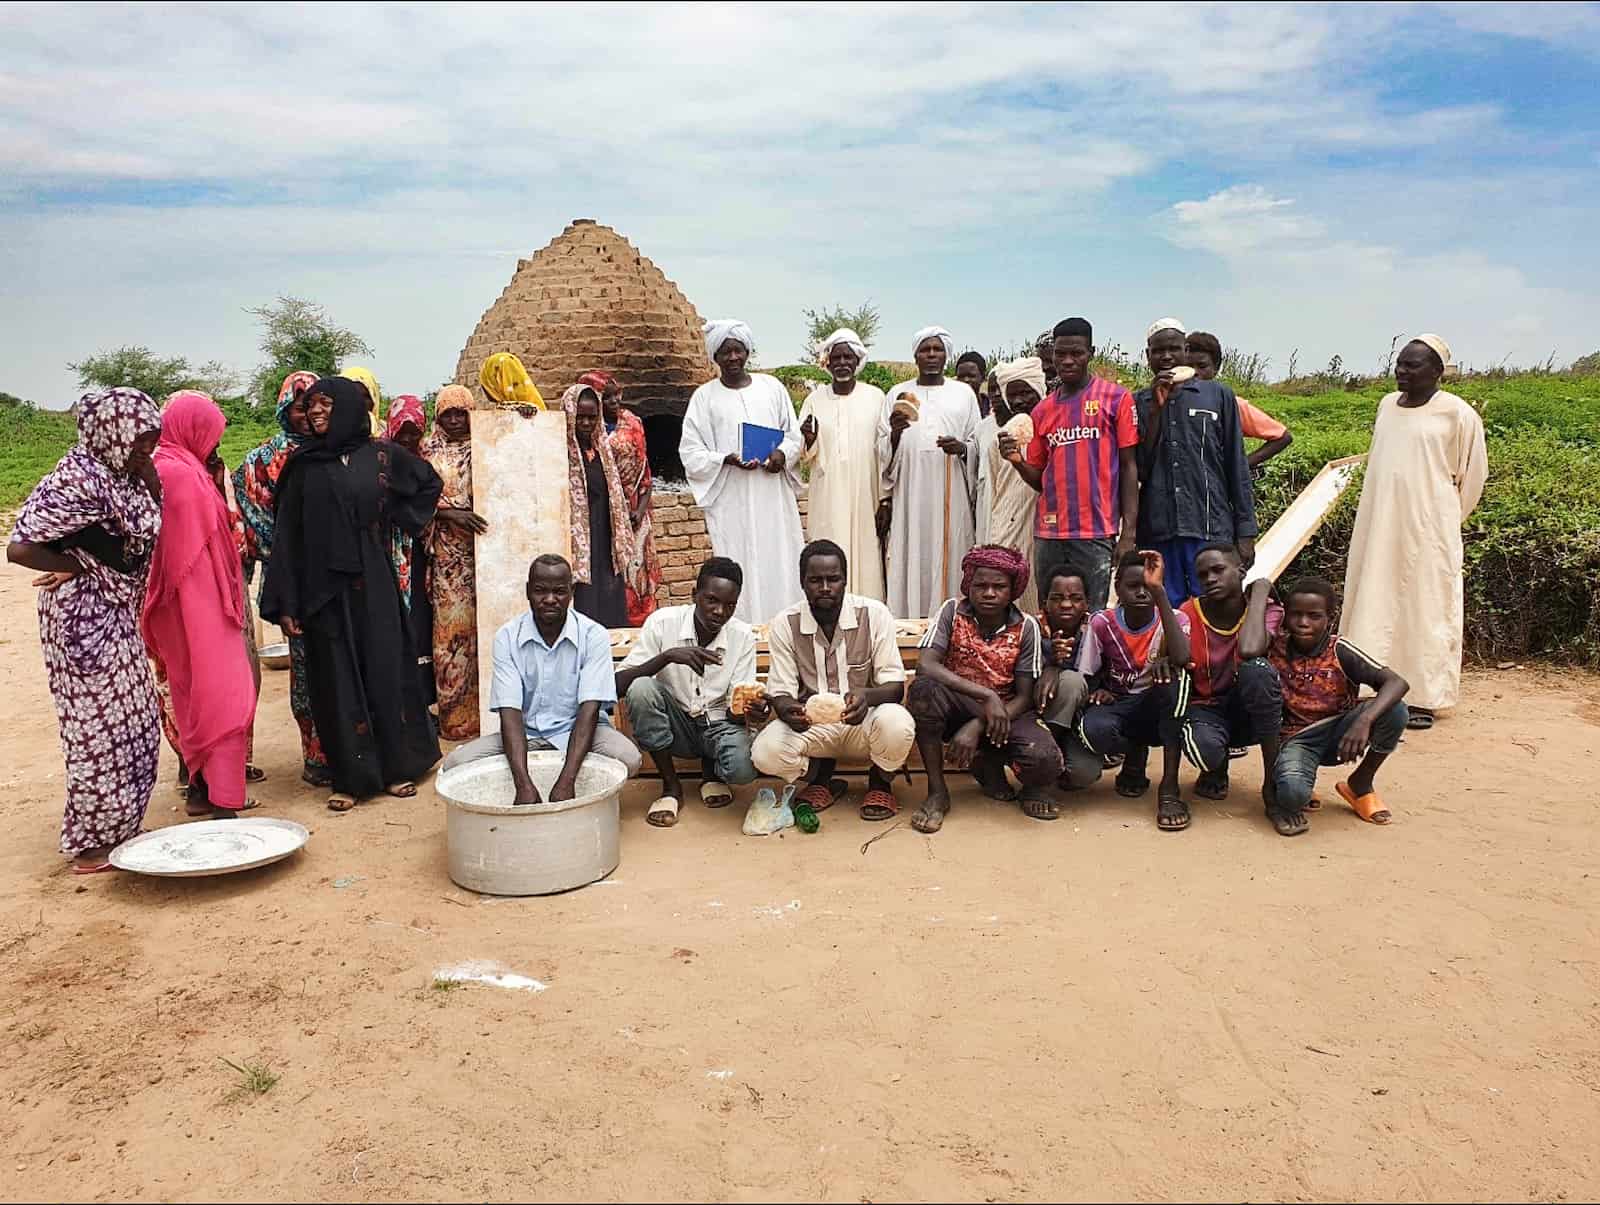 A group of people in rural Sudan